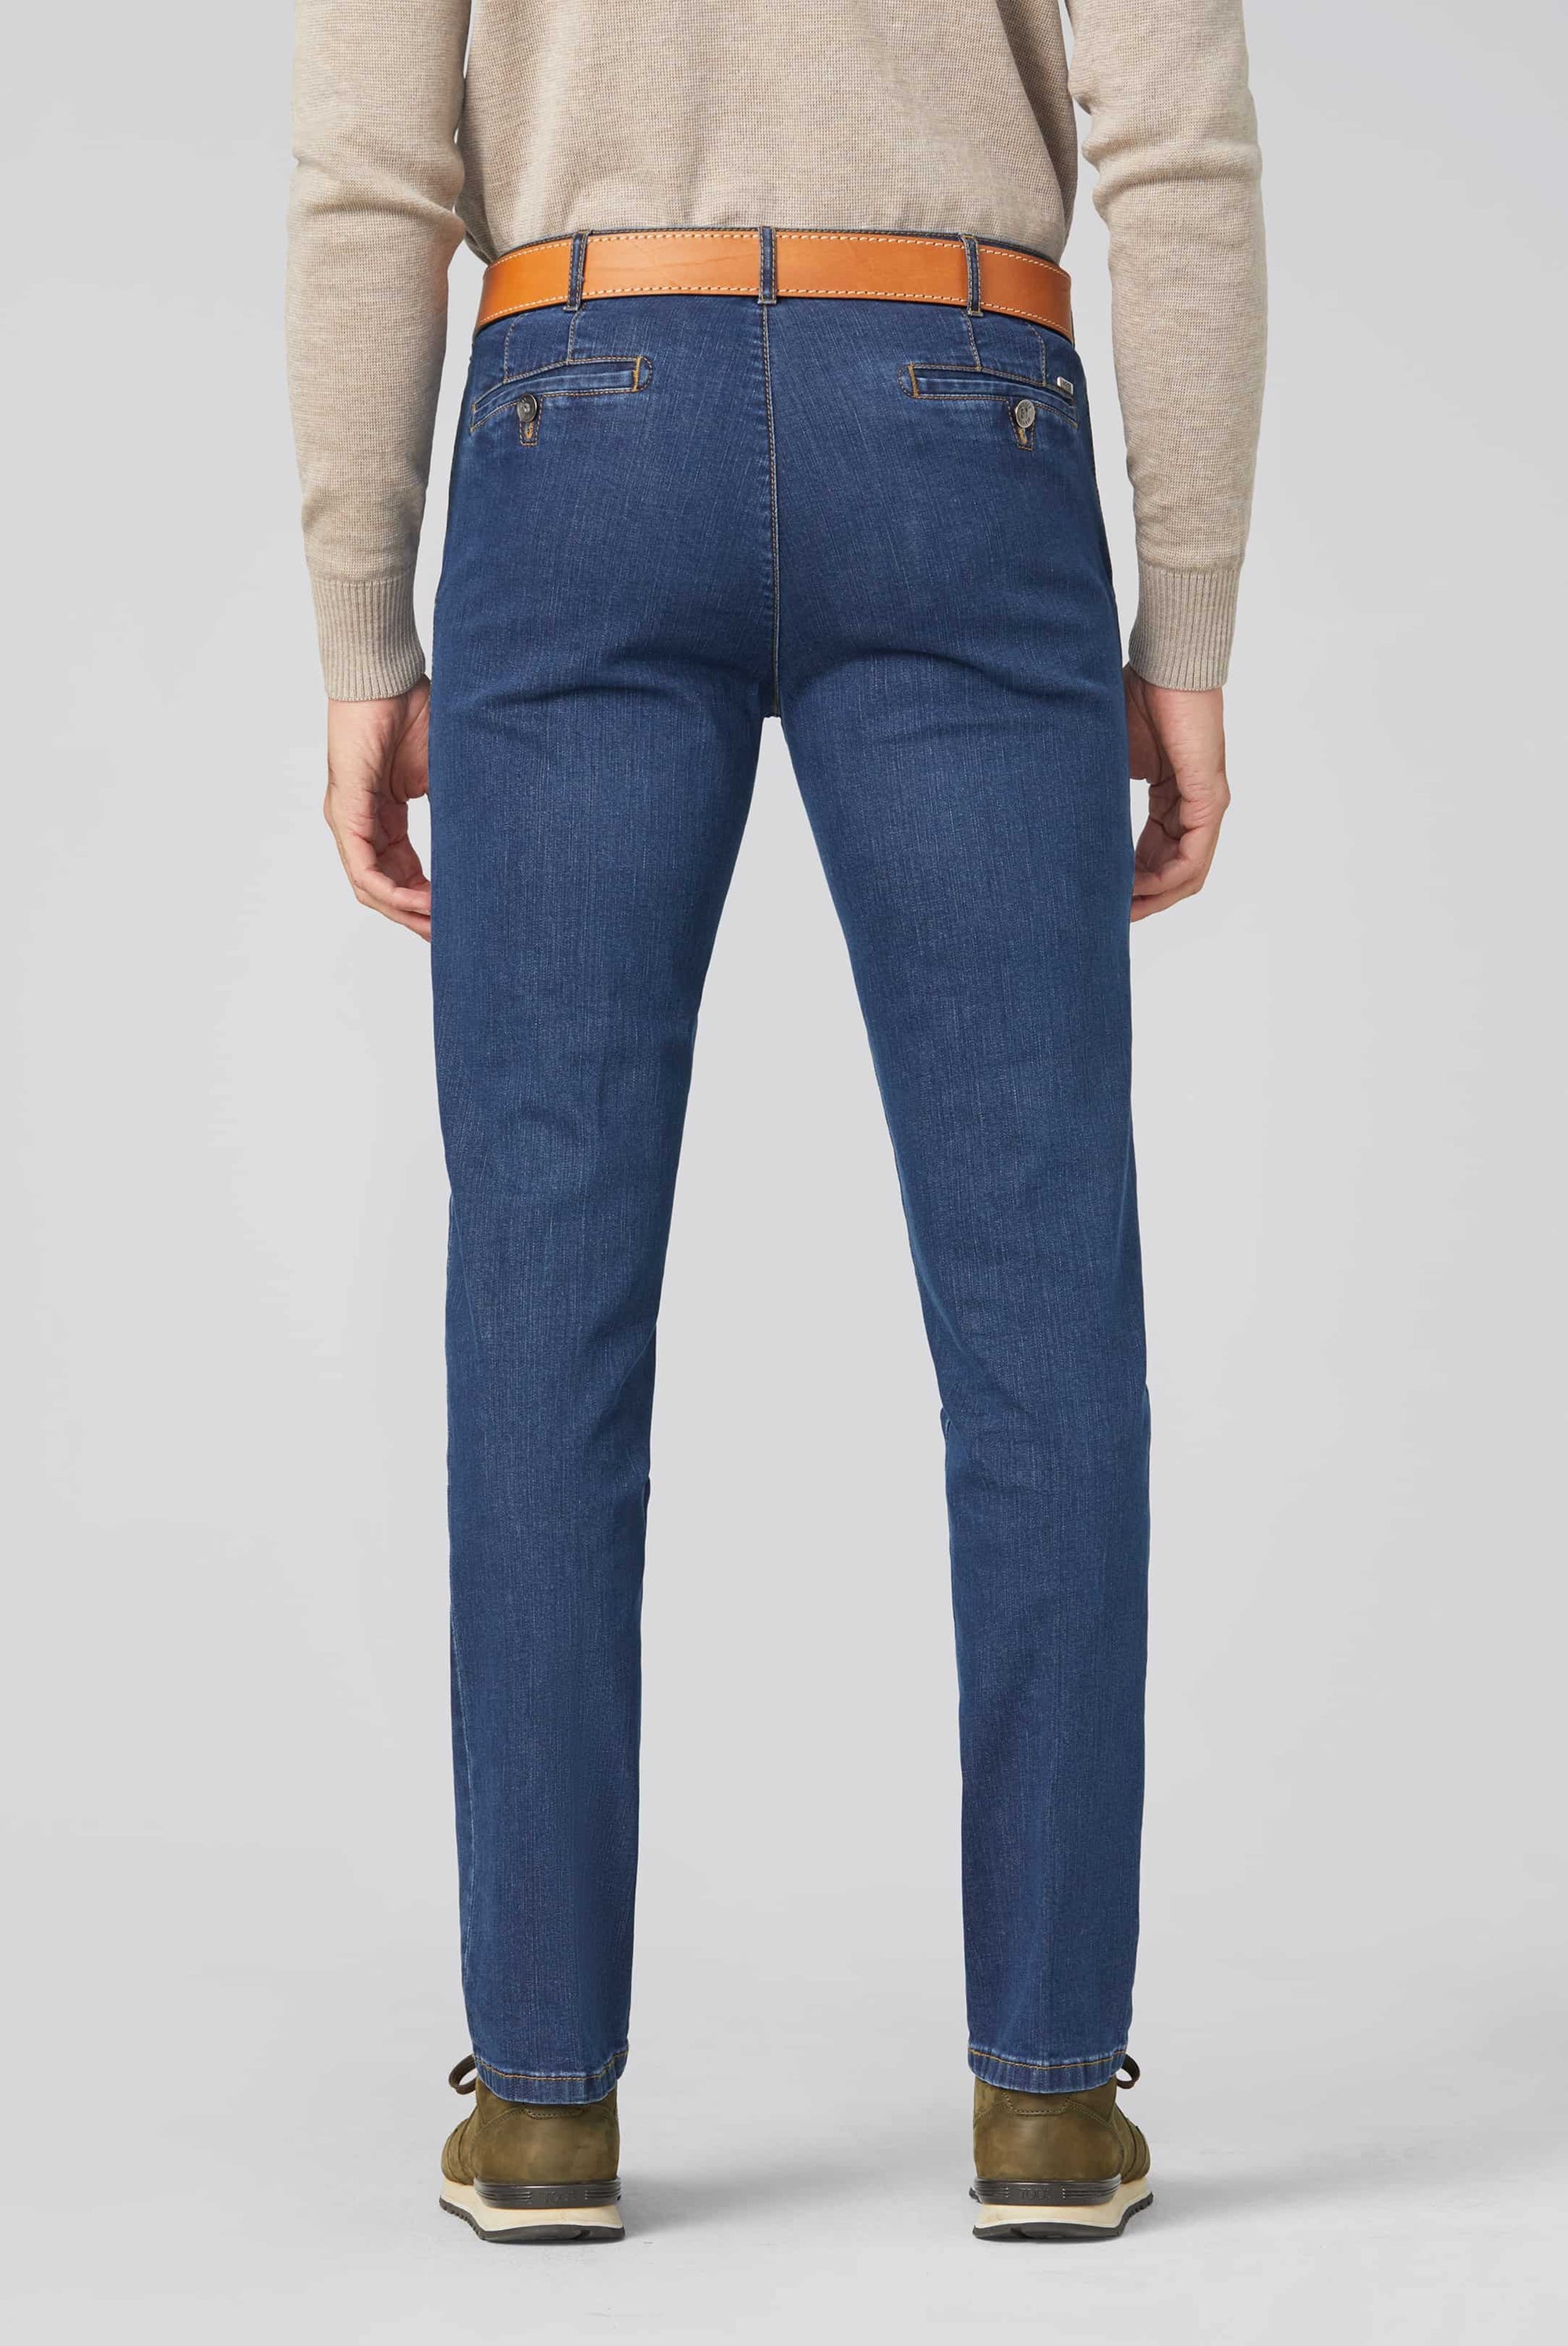 Meyer - Elegante Jeans mit moderatem Beinverlauf - Roma